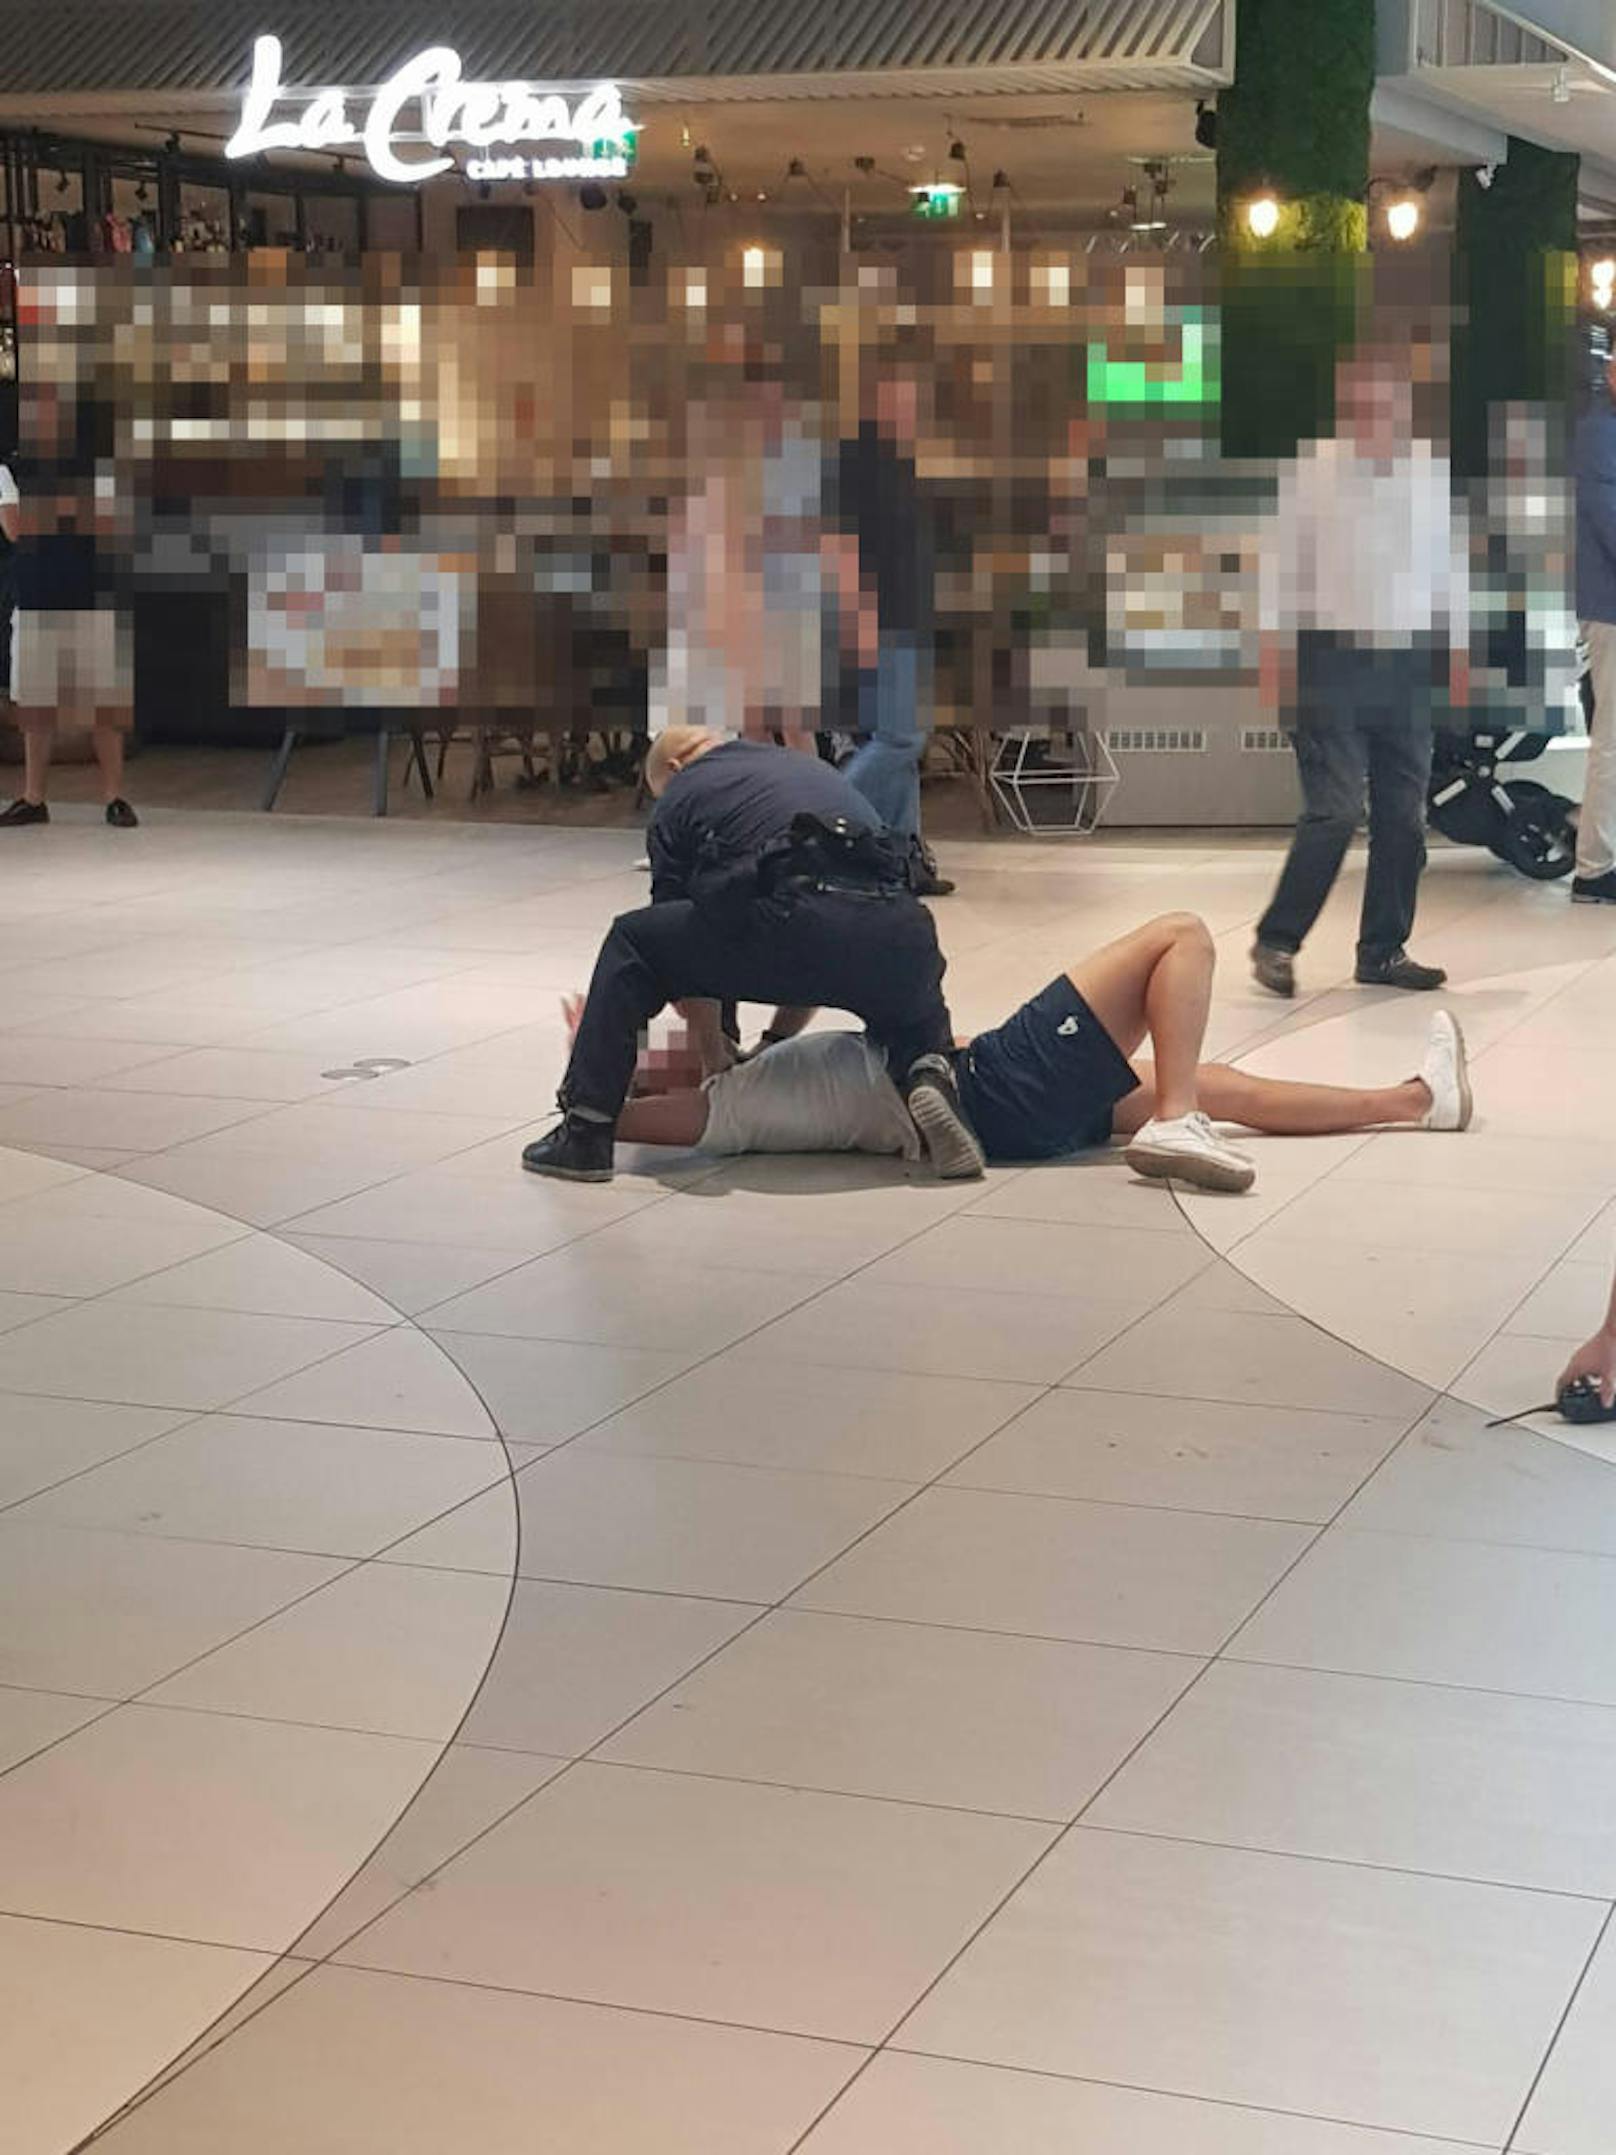 Donauzentrum, Dienstagnachmittag, gegen 16.30 Uhr: Ein alkoholisierter Mann wurde gegenüber einer Kellnerin aggressiv.